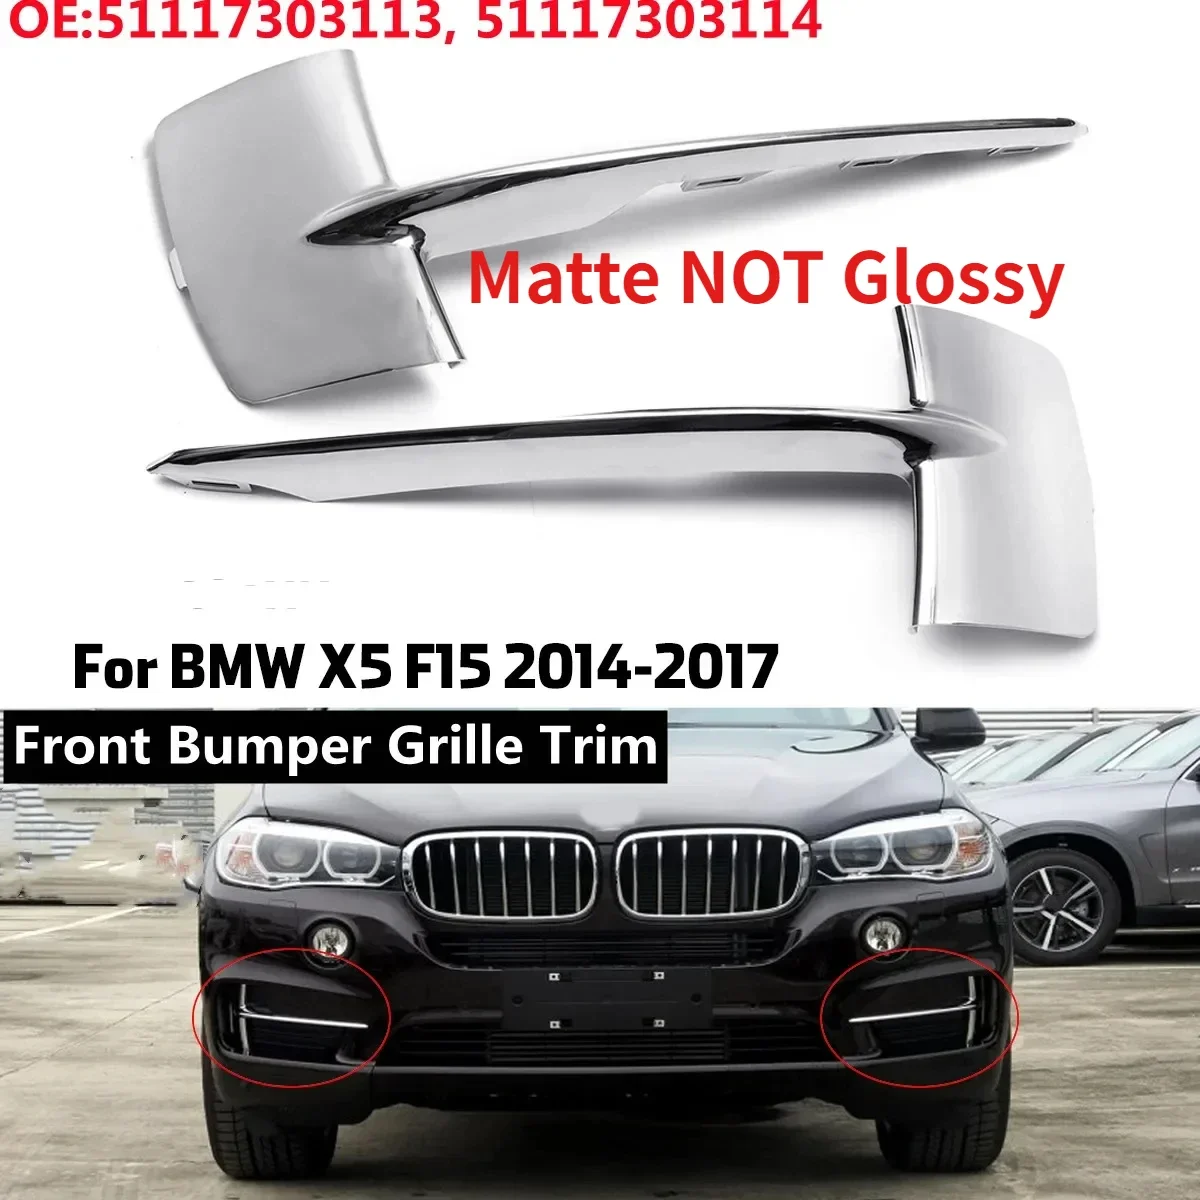 Matte Front Bumper Grille Trim Molding ABS For BMW X5 F15 35i 35ix 35dx 40ex 2014-2017 51117303113 51117303114 Bumper Trim